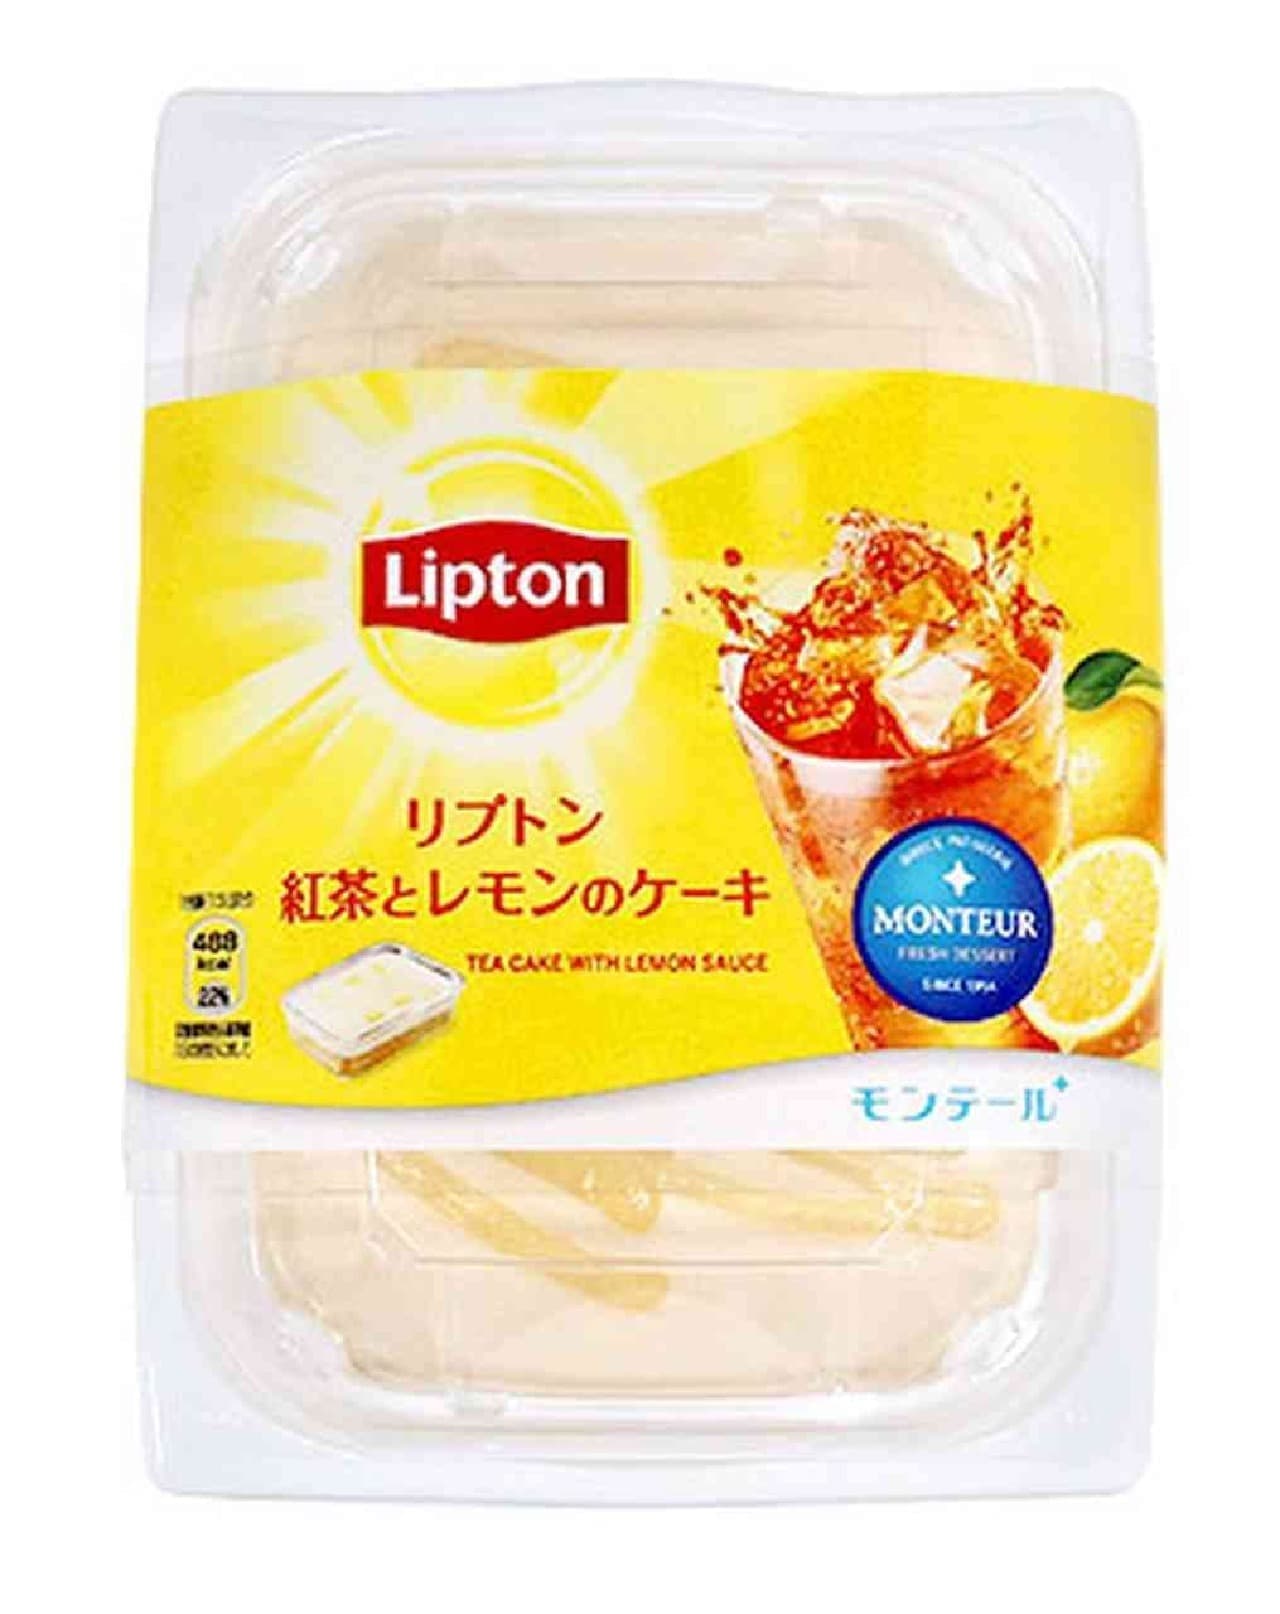 リプトン × モンテール「リプトン・紅茶とレモンのケーキ」